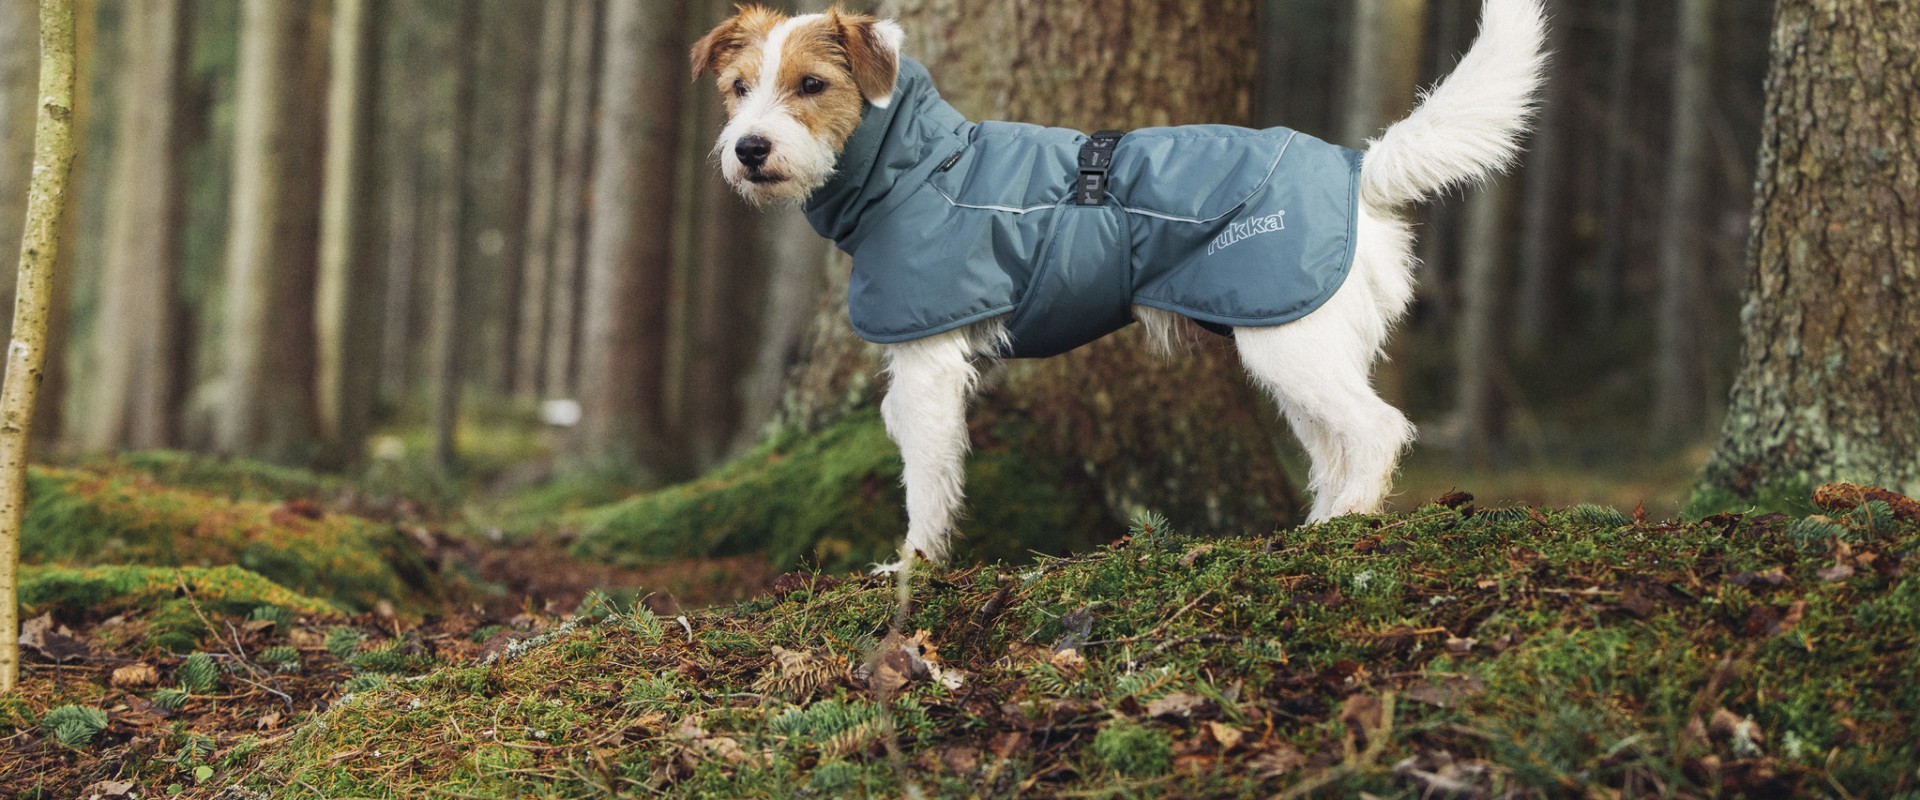 Welke temperatuur heeft de hond een jas nodig?